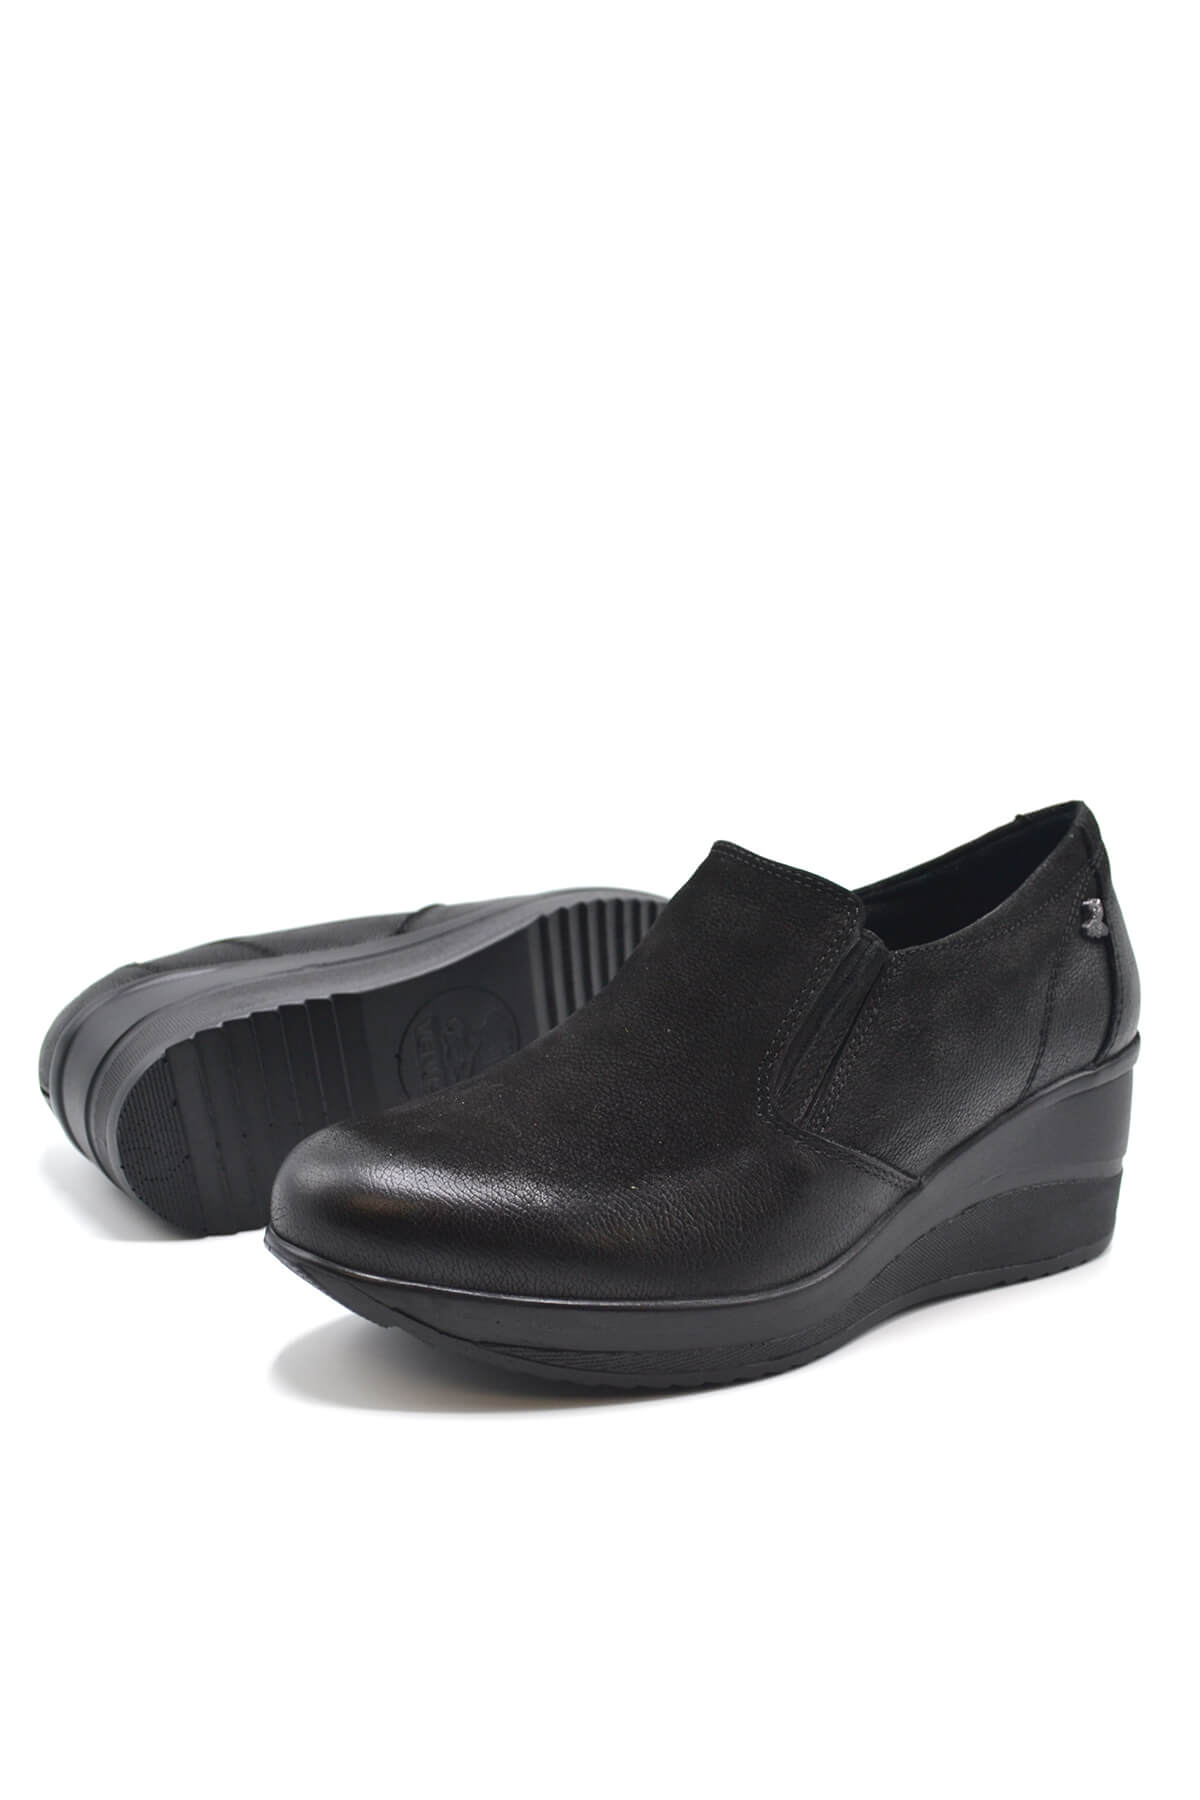 Kadın Dolgu Topuk Deri Ayakkabı Siyah 2111501K